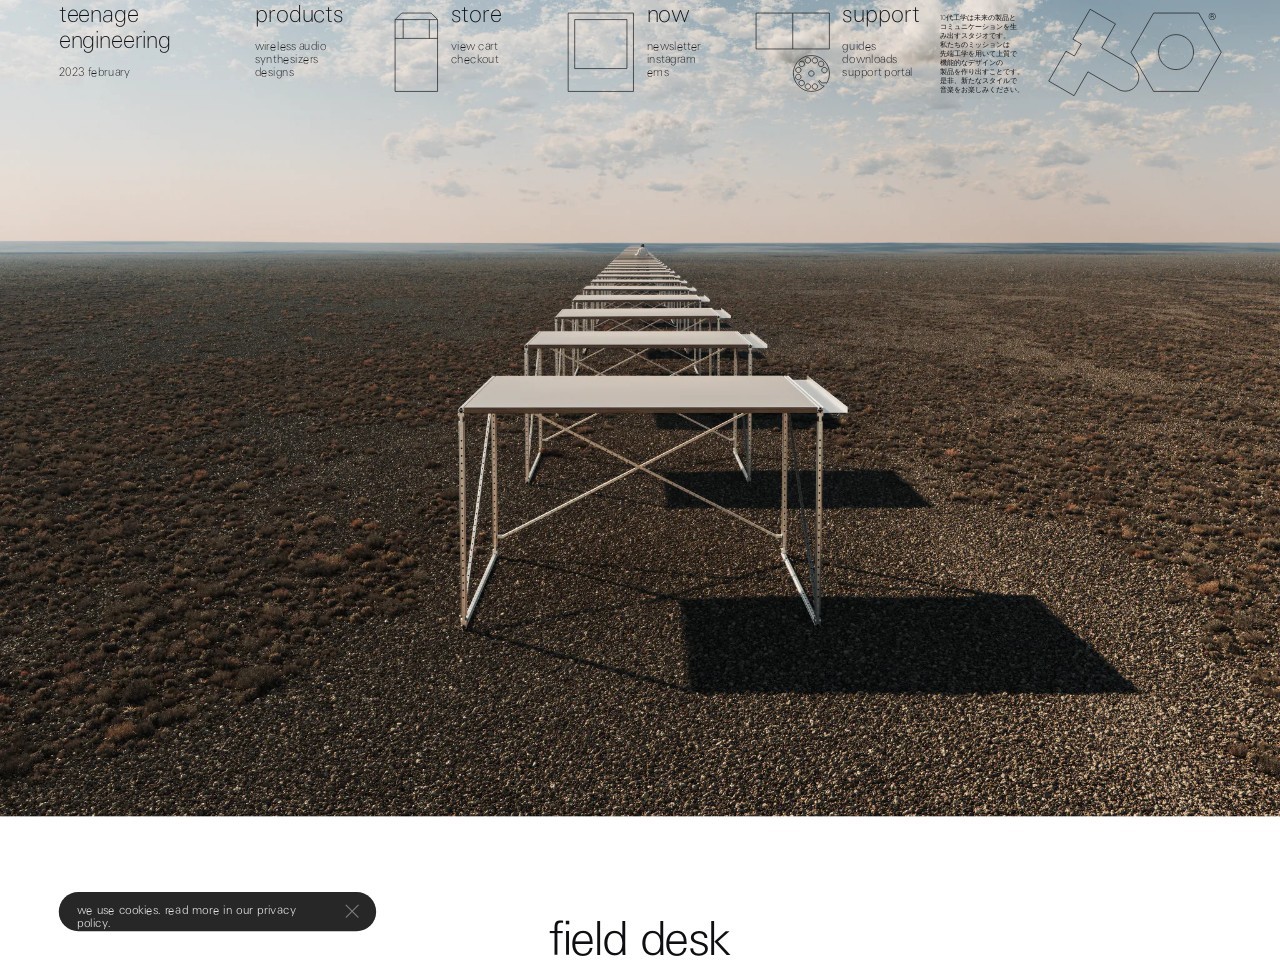 field desk - teenage engineering